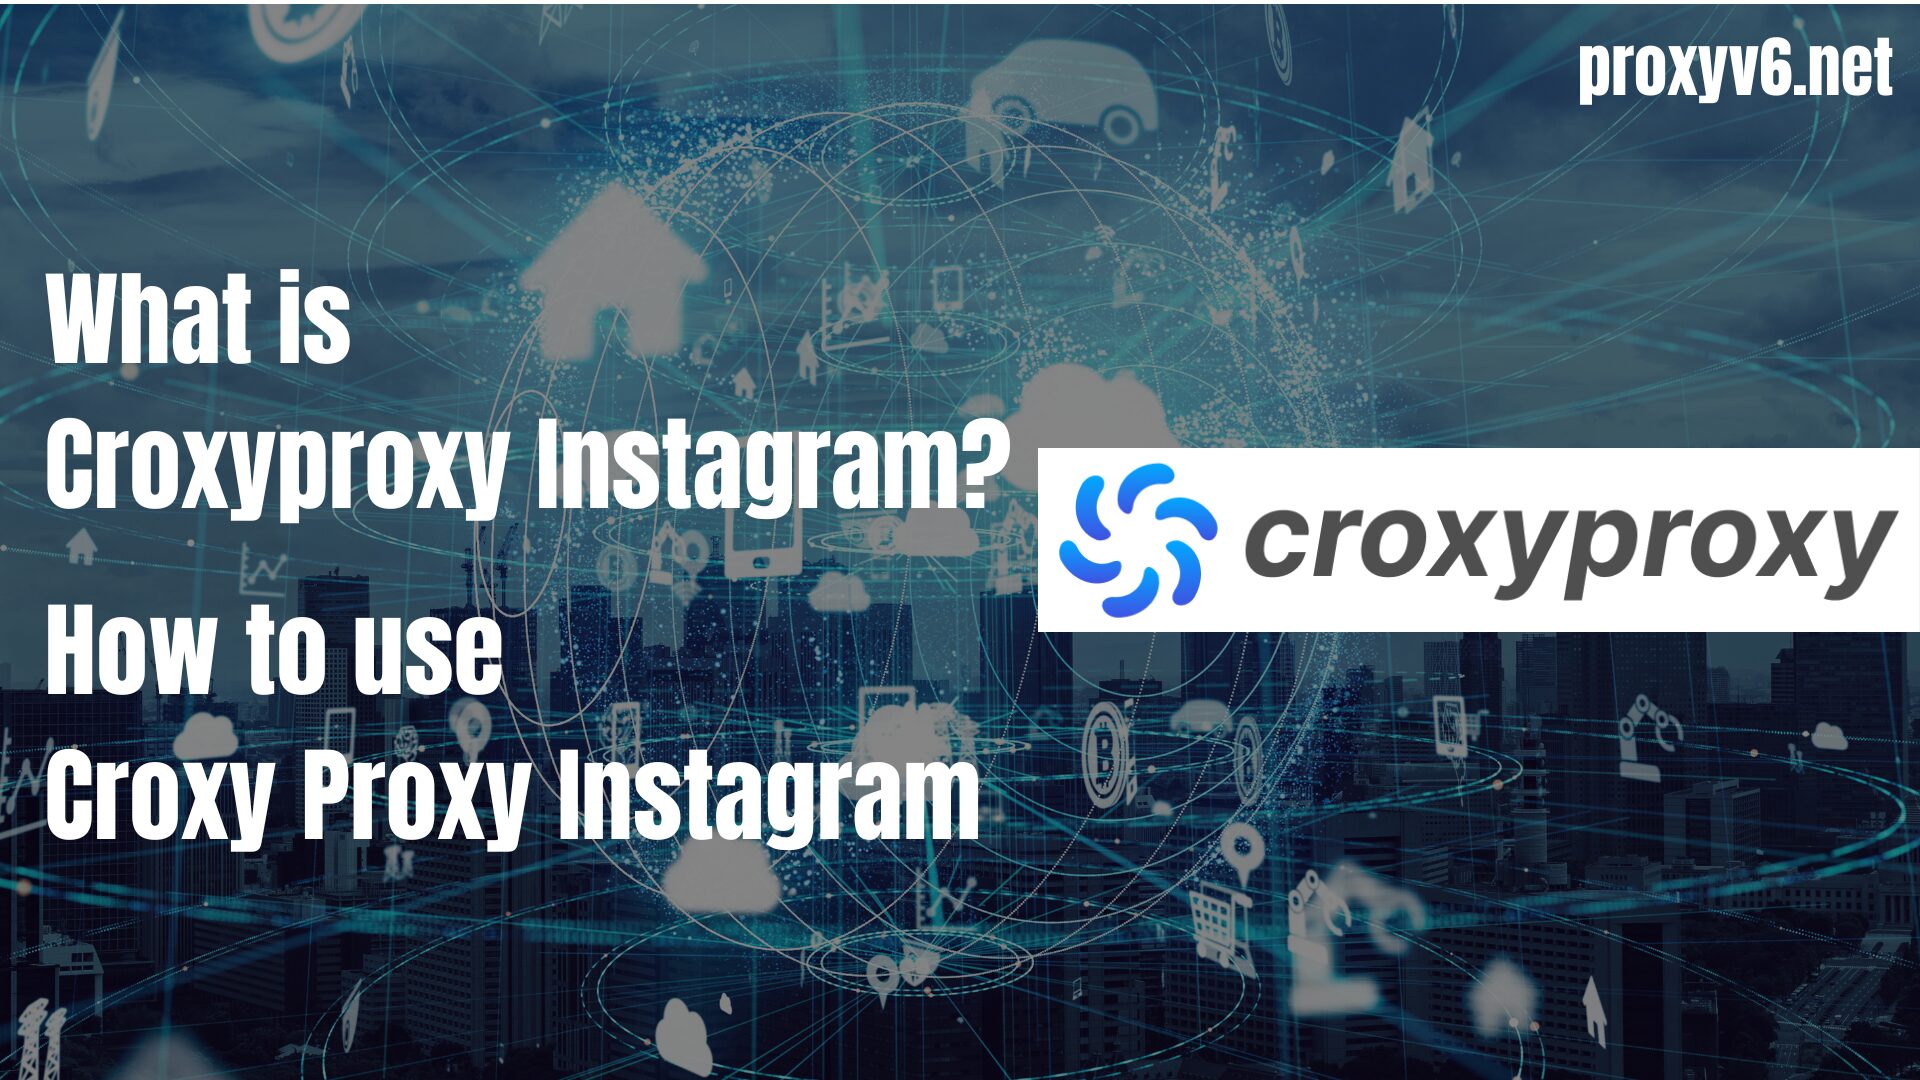 Croxyproxy Instagram